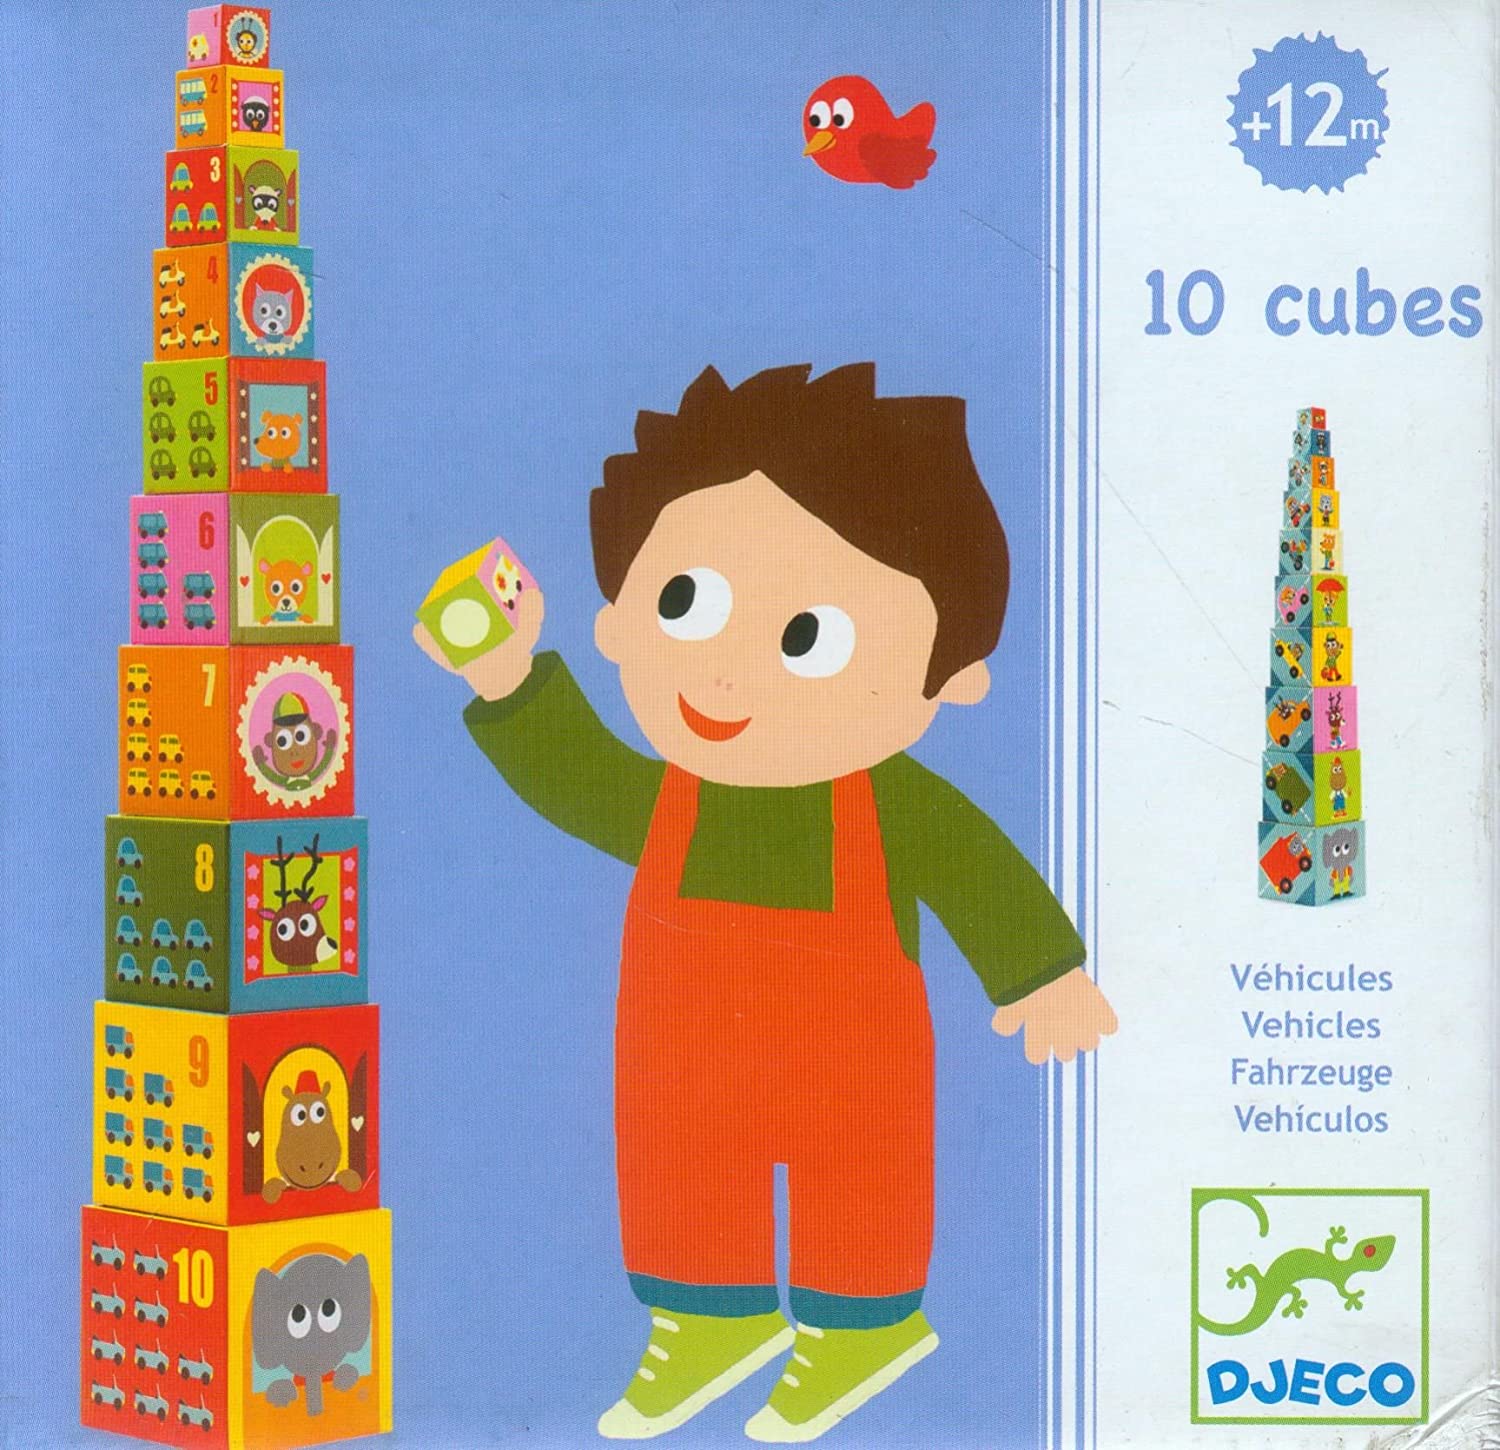 DJECO – Cubi da Impilare Veicoli (12m+)